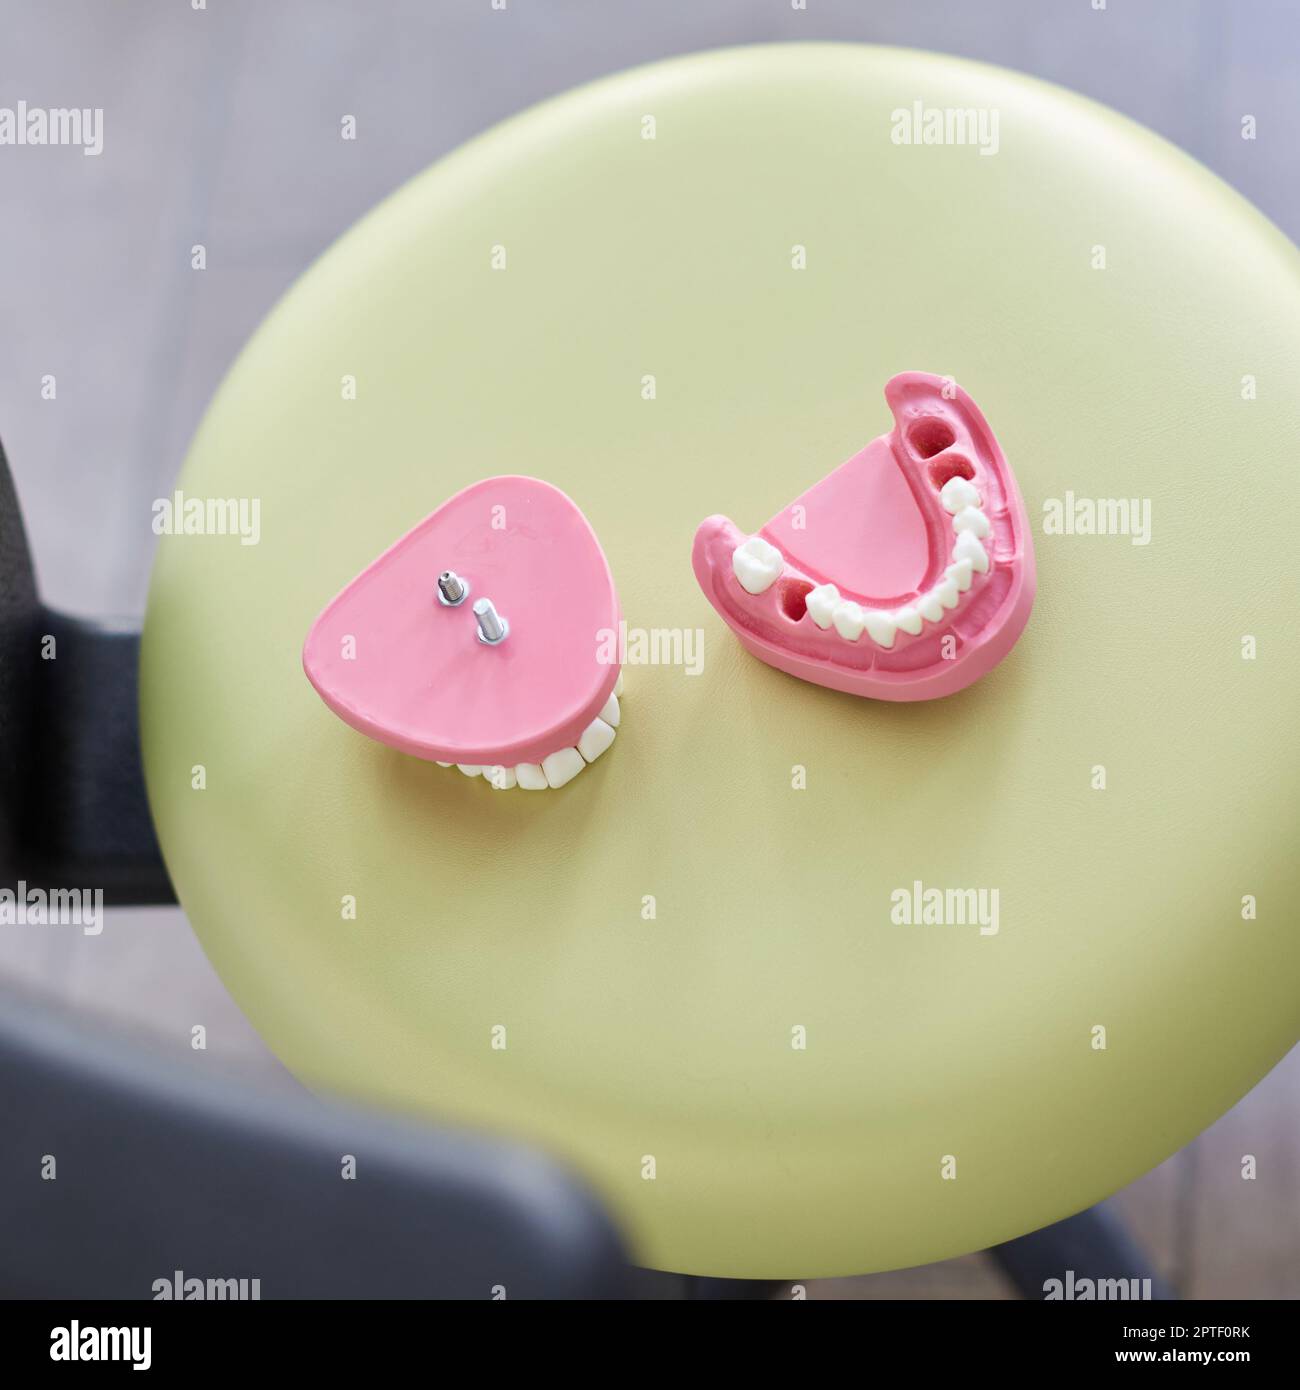 Odontoiatria estetica. Primo piano del modello dentario in gesso rosa dei denti umani che il medico presenterà al paziente. Vista dall'alto del modello di ganascia senza diverse te Foto Stock